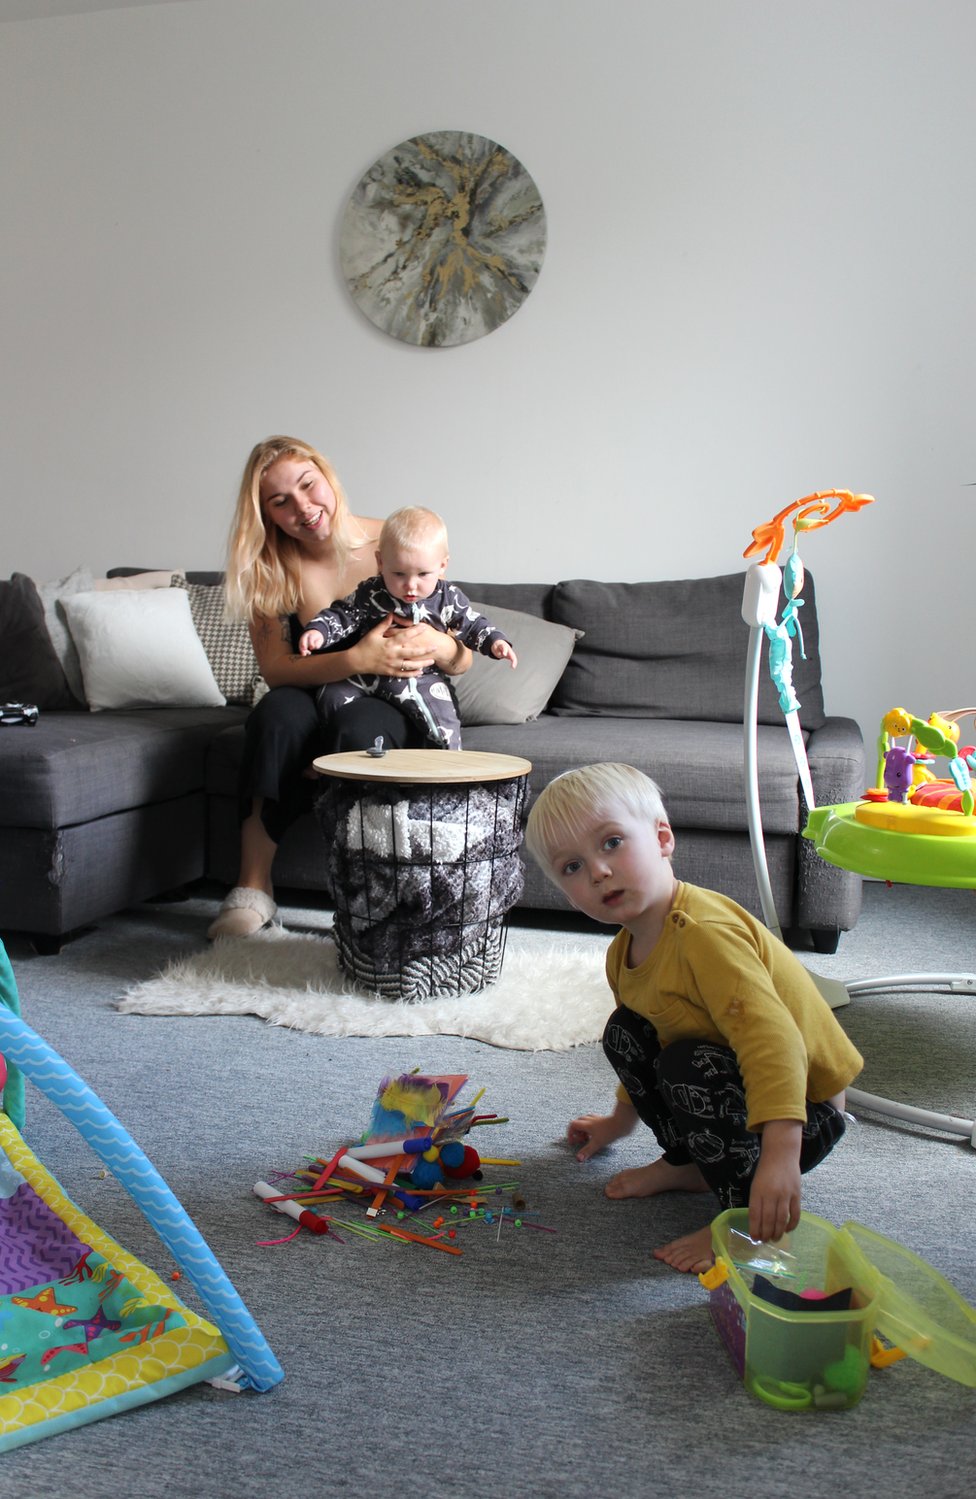 Мать сидит на диване, держа своего ребенка, пока ее малыш играет со своими игрушками на полу